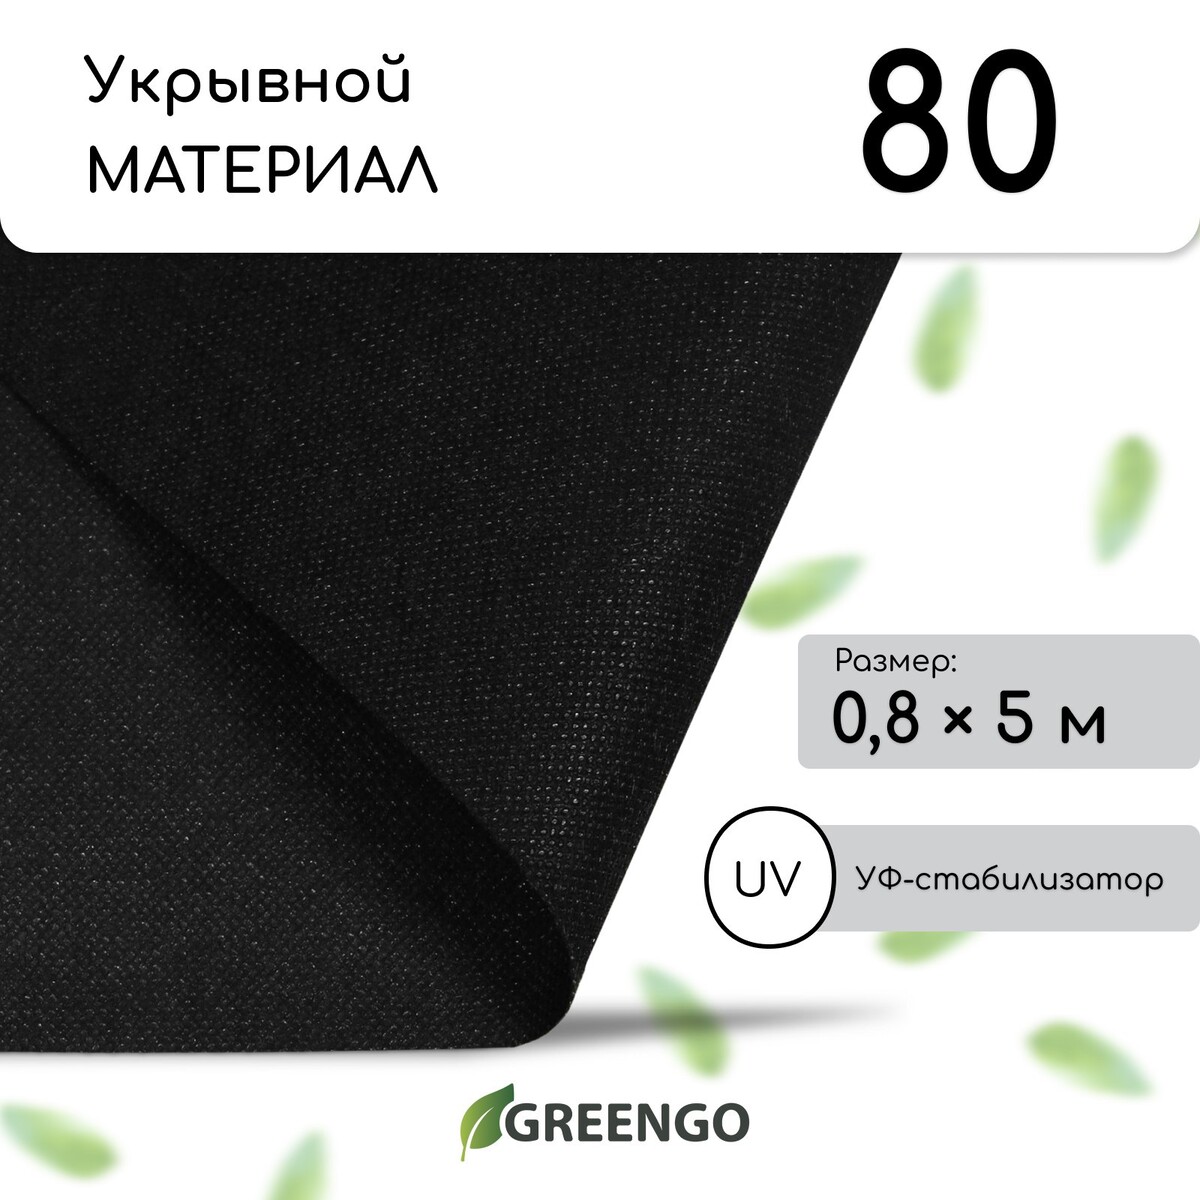 Материал мульчирующий, 0,8 × 5 м, плотность 80, с уф-стабилизатором, чёрный, greengo, эконом 20% Greengo, цвет черный